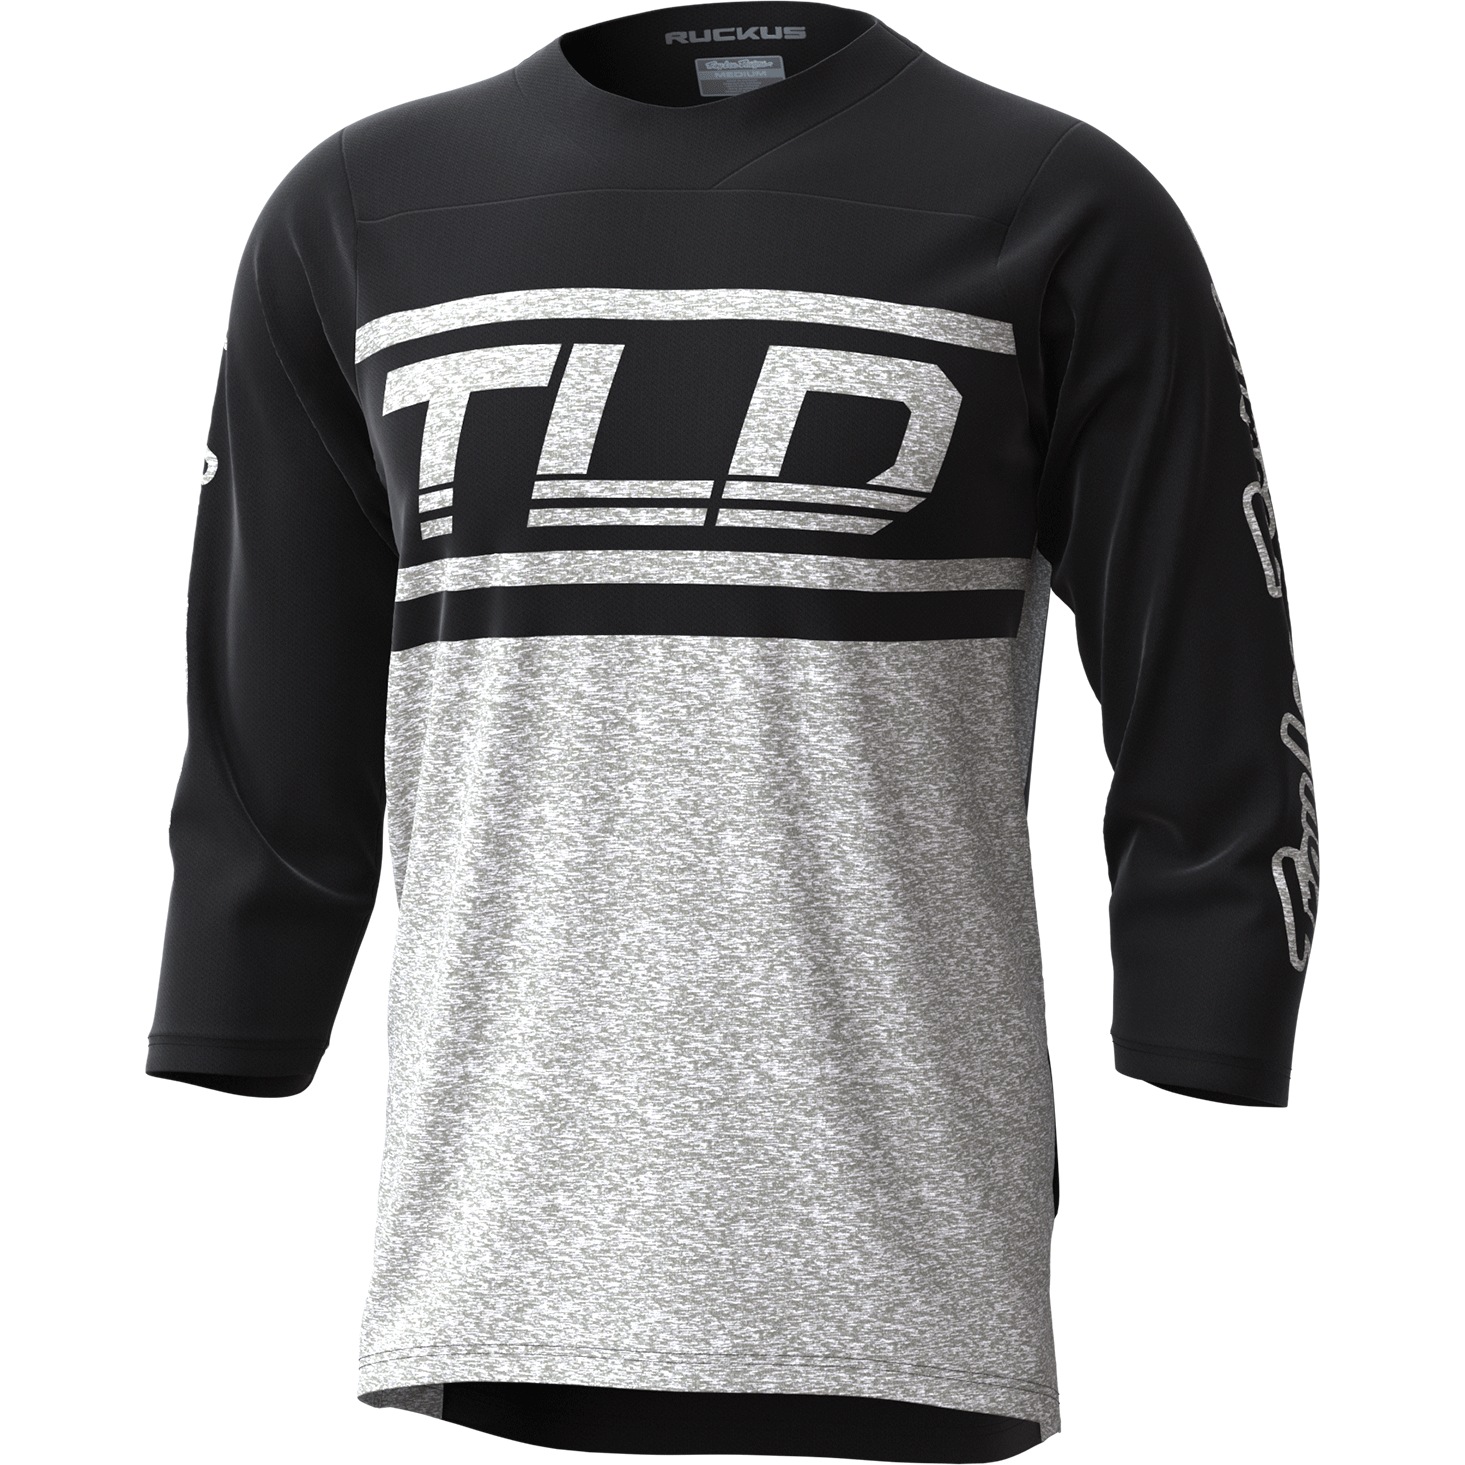 Productfoto van Troy Lee Designs Ruckus Shirt met 3/4-Mouwen - bars black / off white